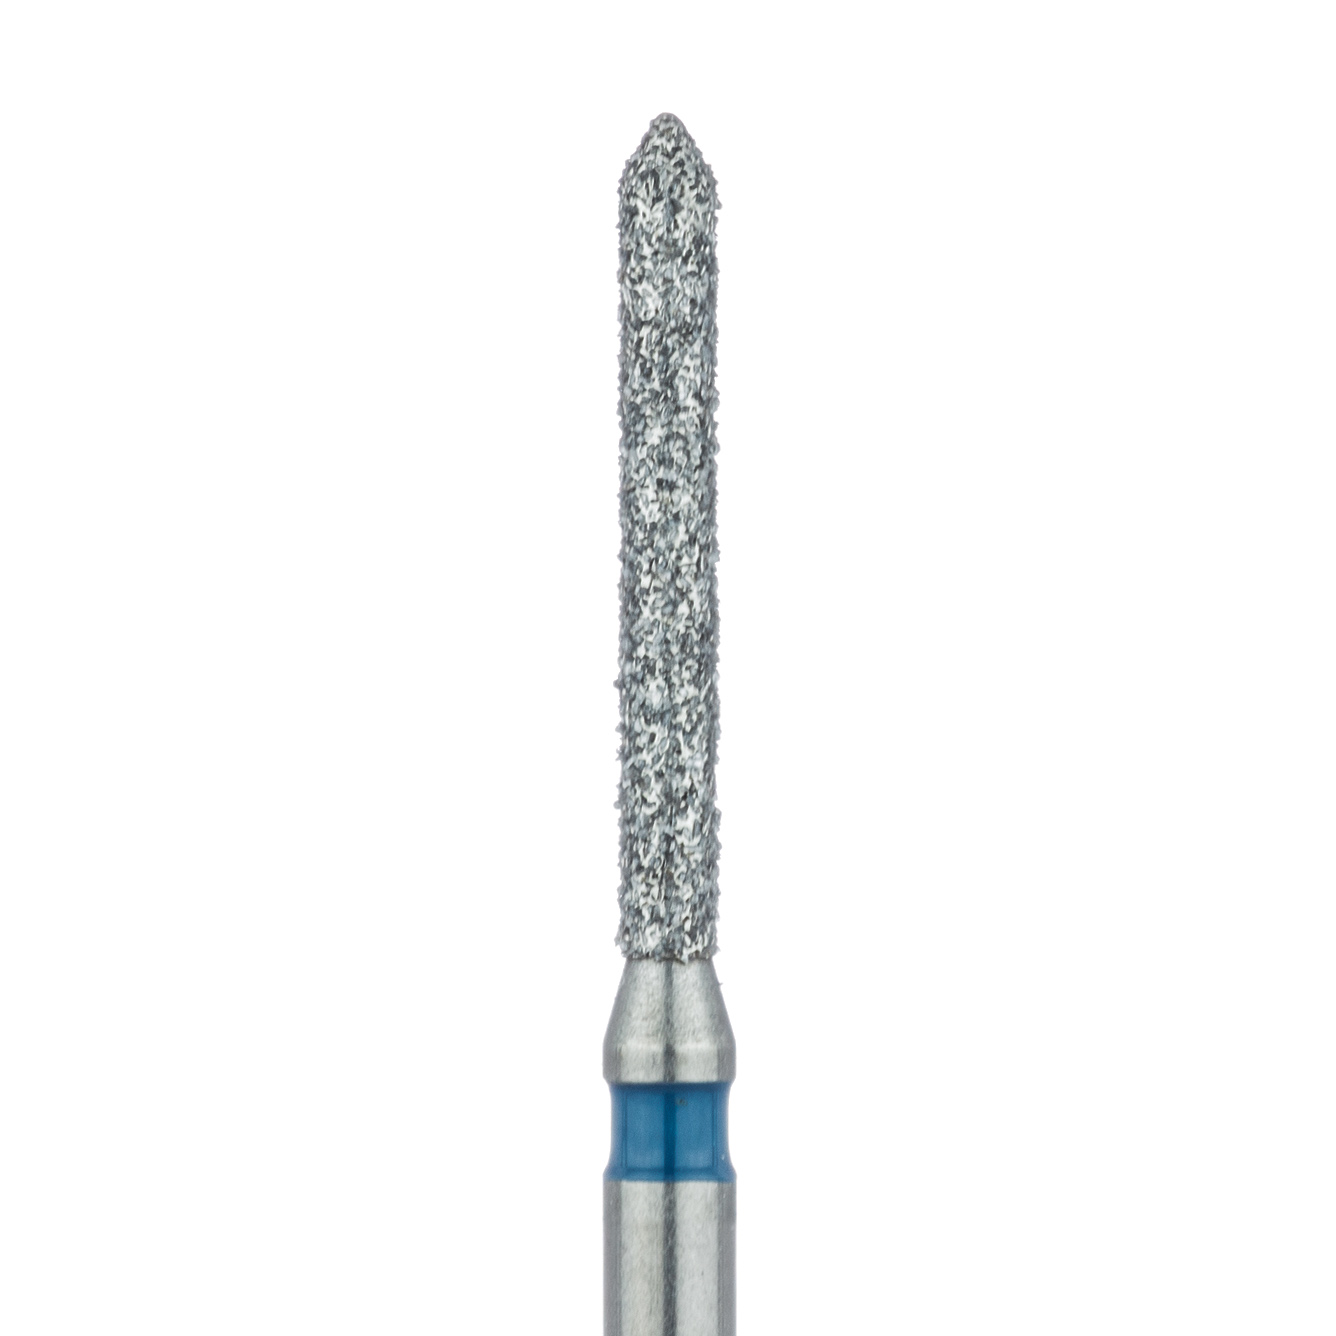 886-012-FG Long Pointed Tip Cylinder Diamond Bur, 1.2mm Ø, Medium, FG